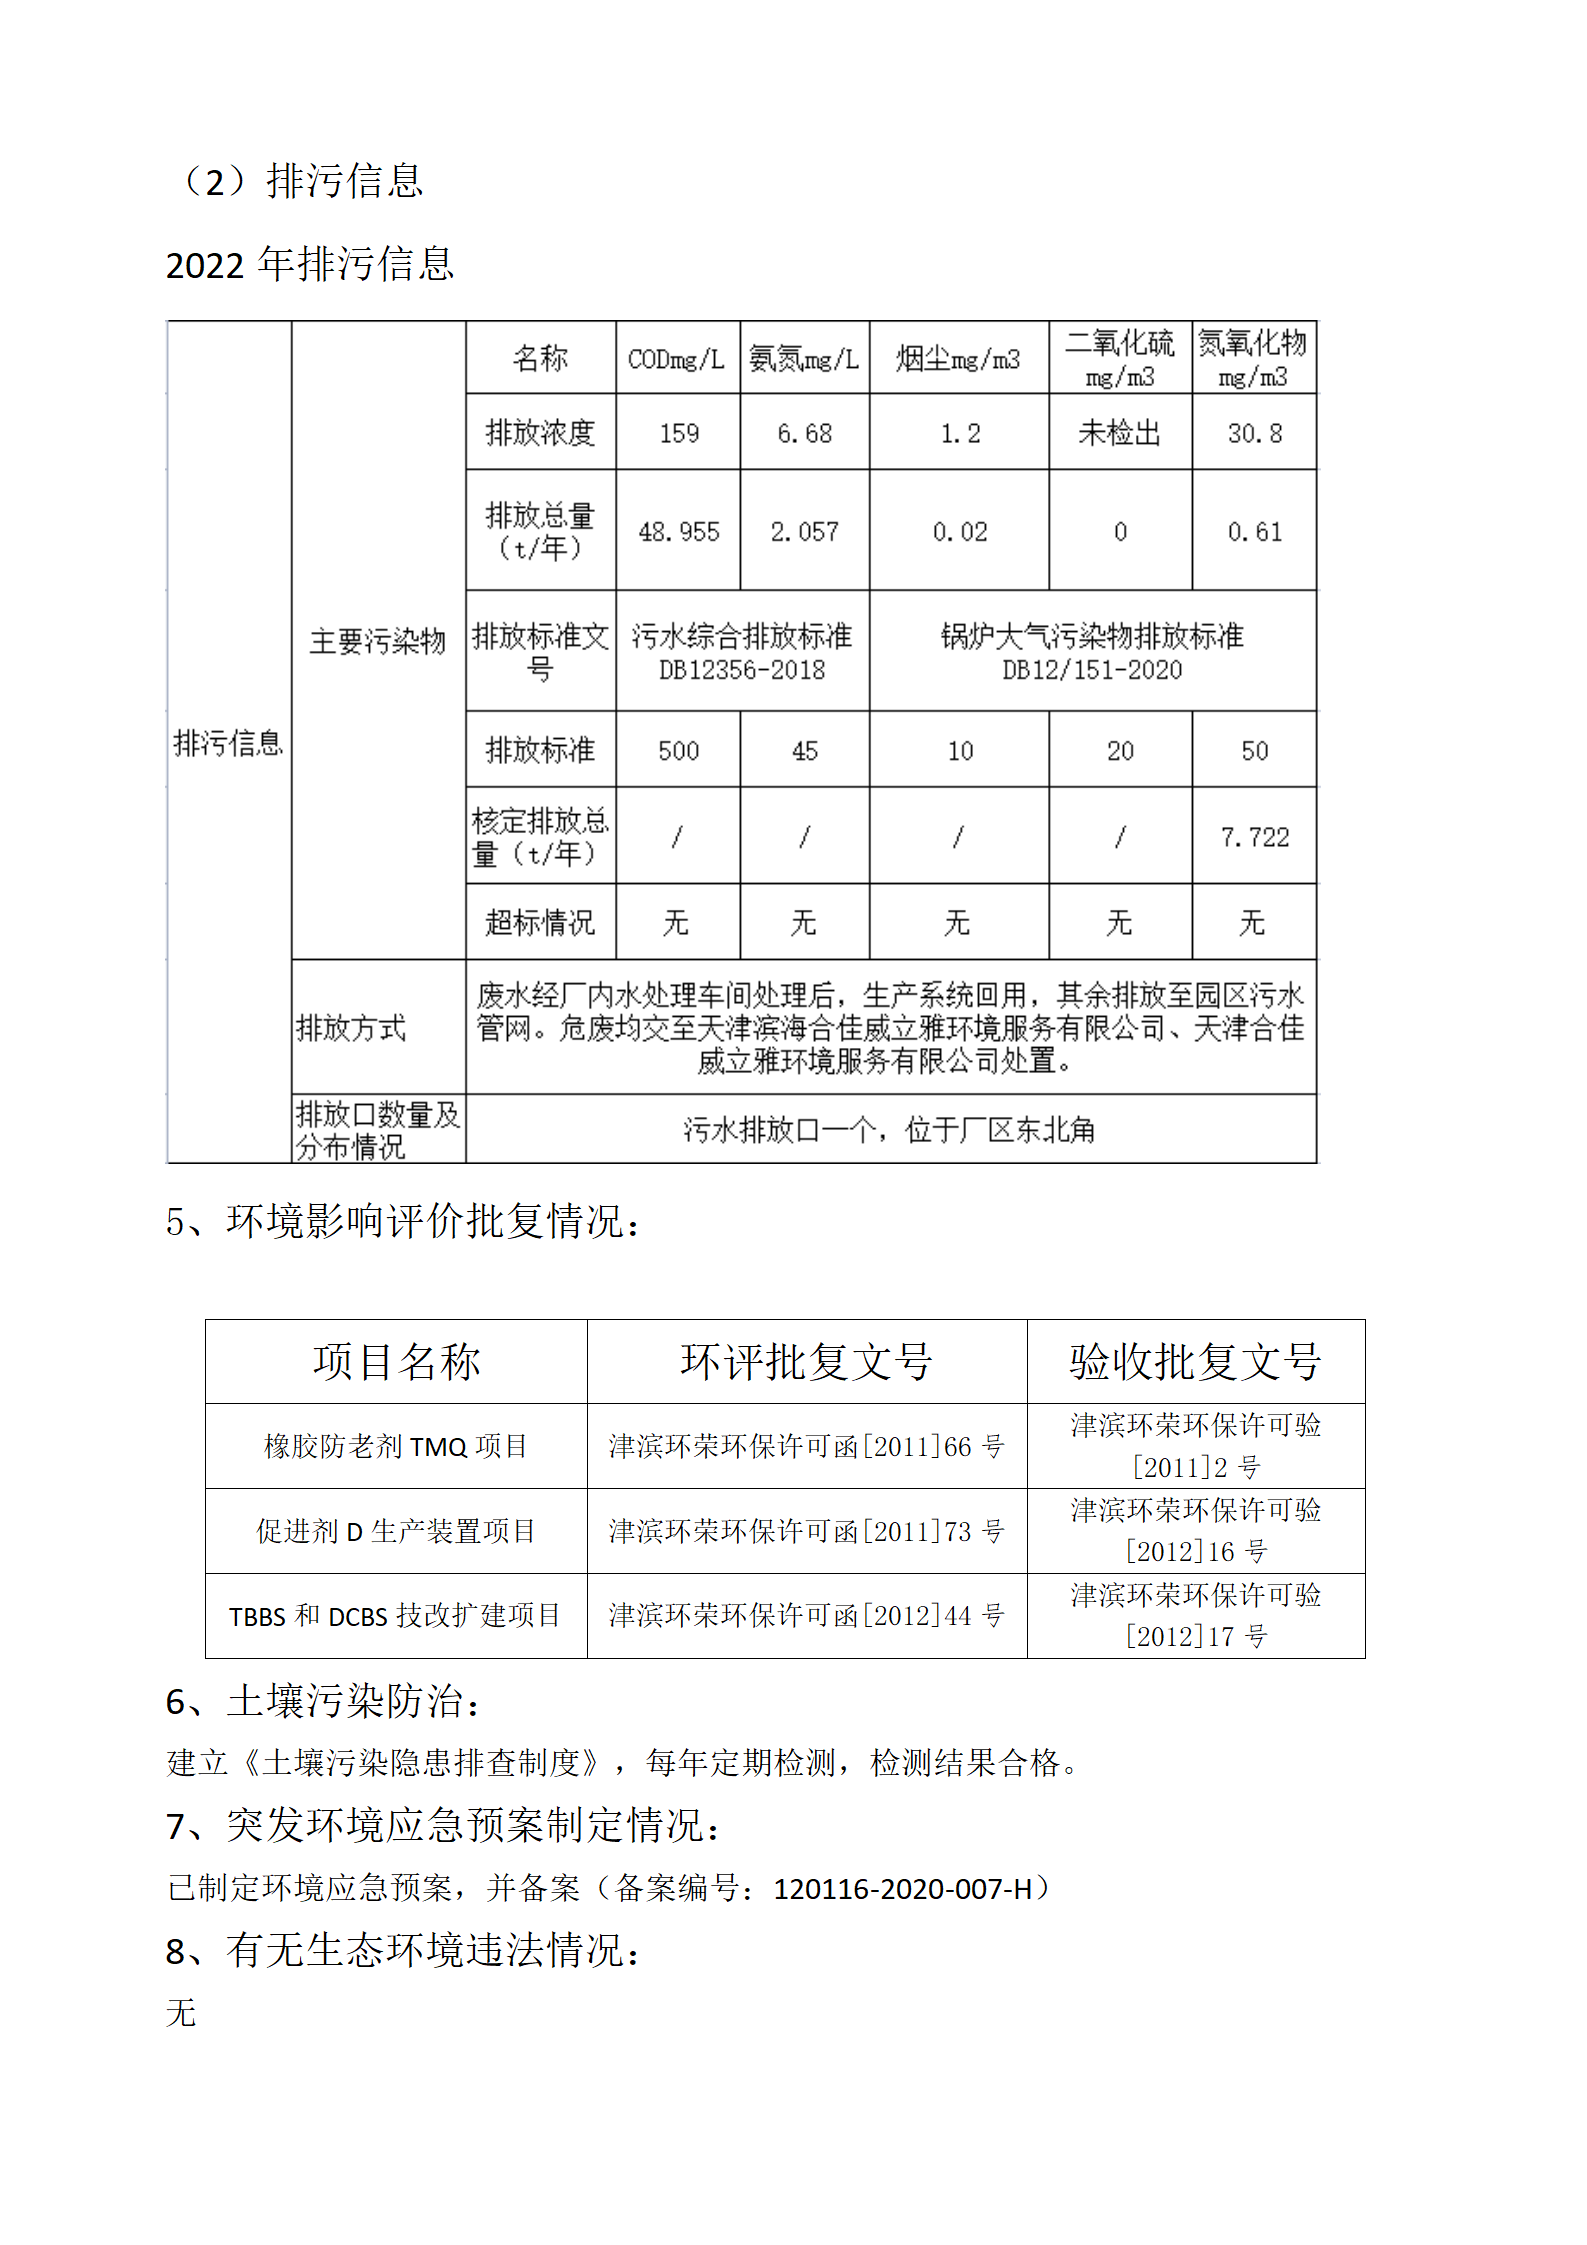 2022年天津环保公开信息_05.png